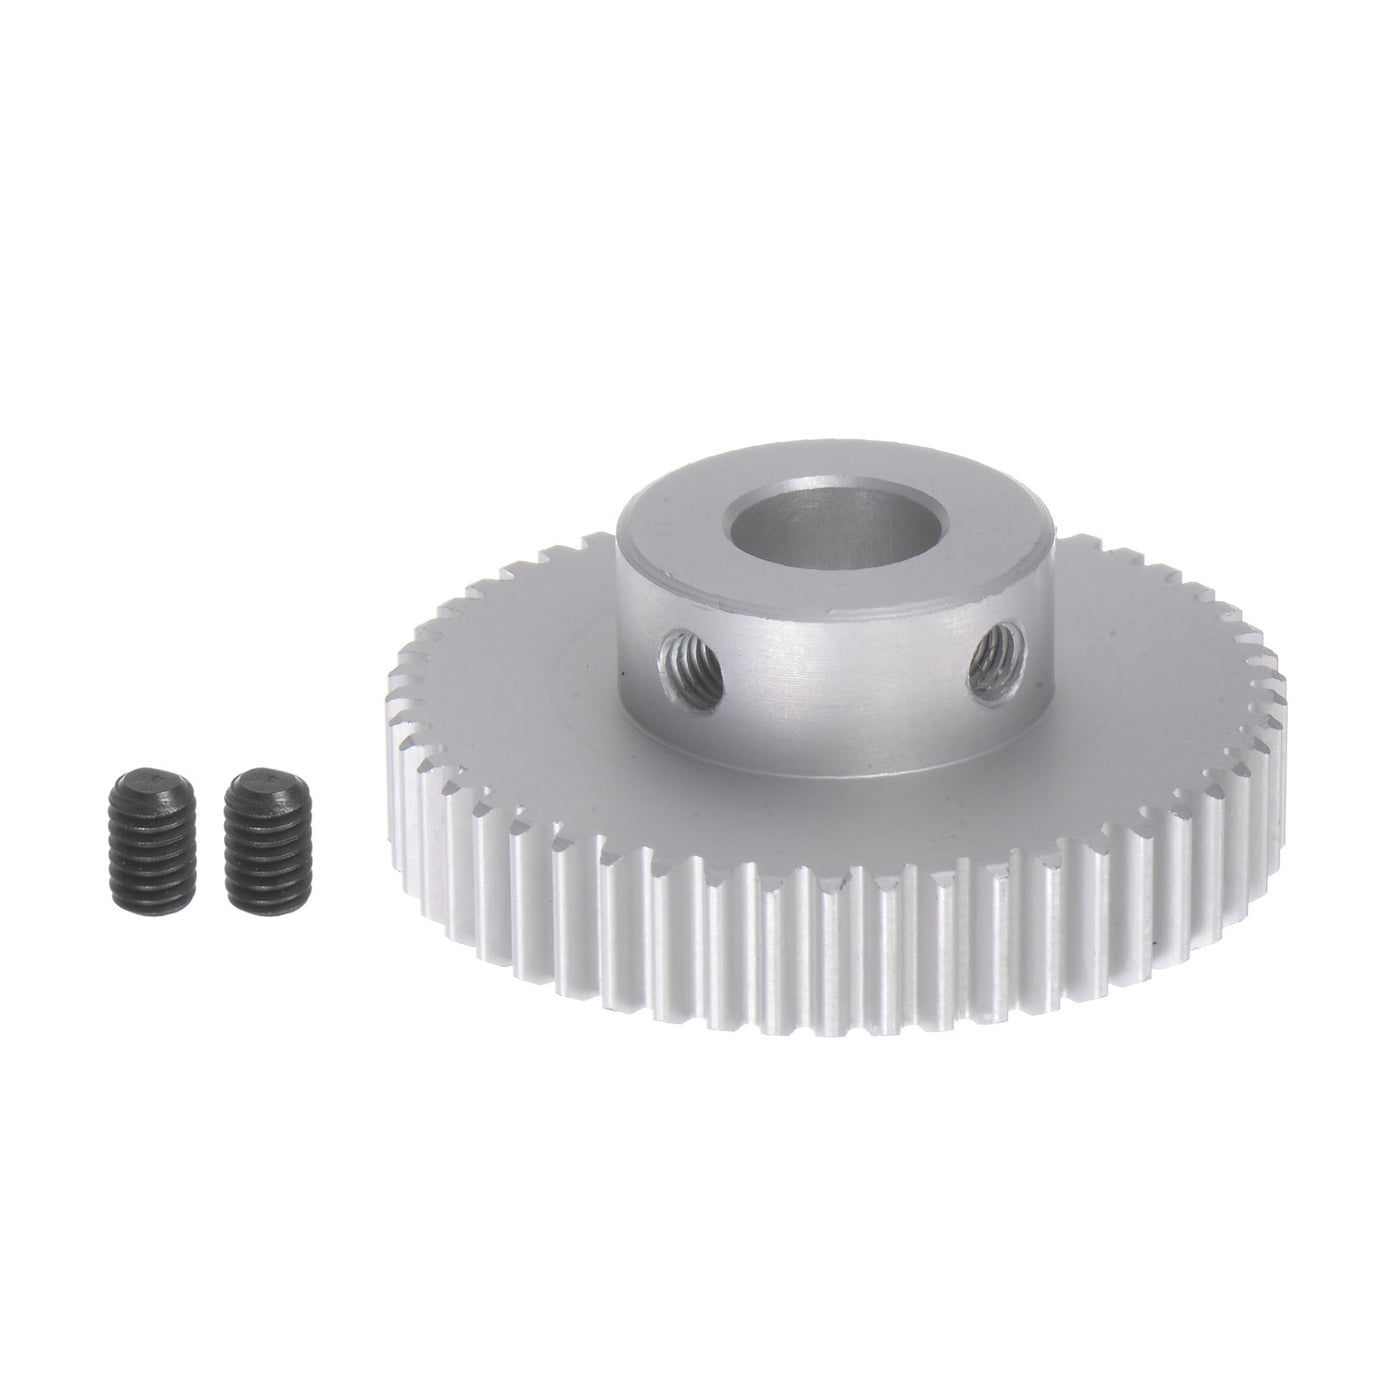 Harfington Step Spur Gear 12mm Inner Hole Pinion Gear 50T Mod 1 Aluminum Alloy Motor Gear